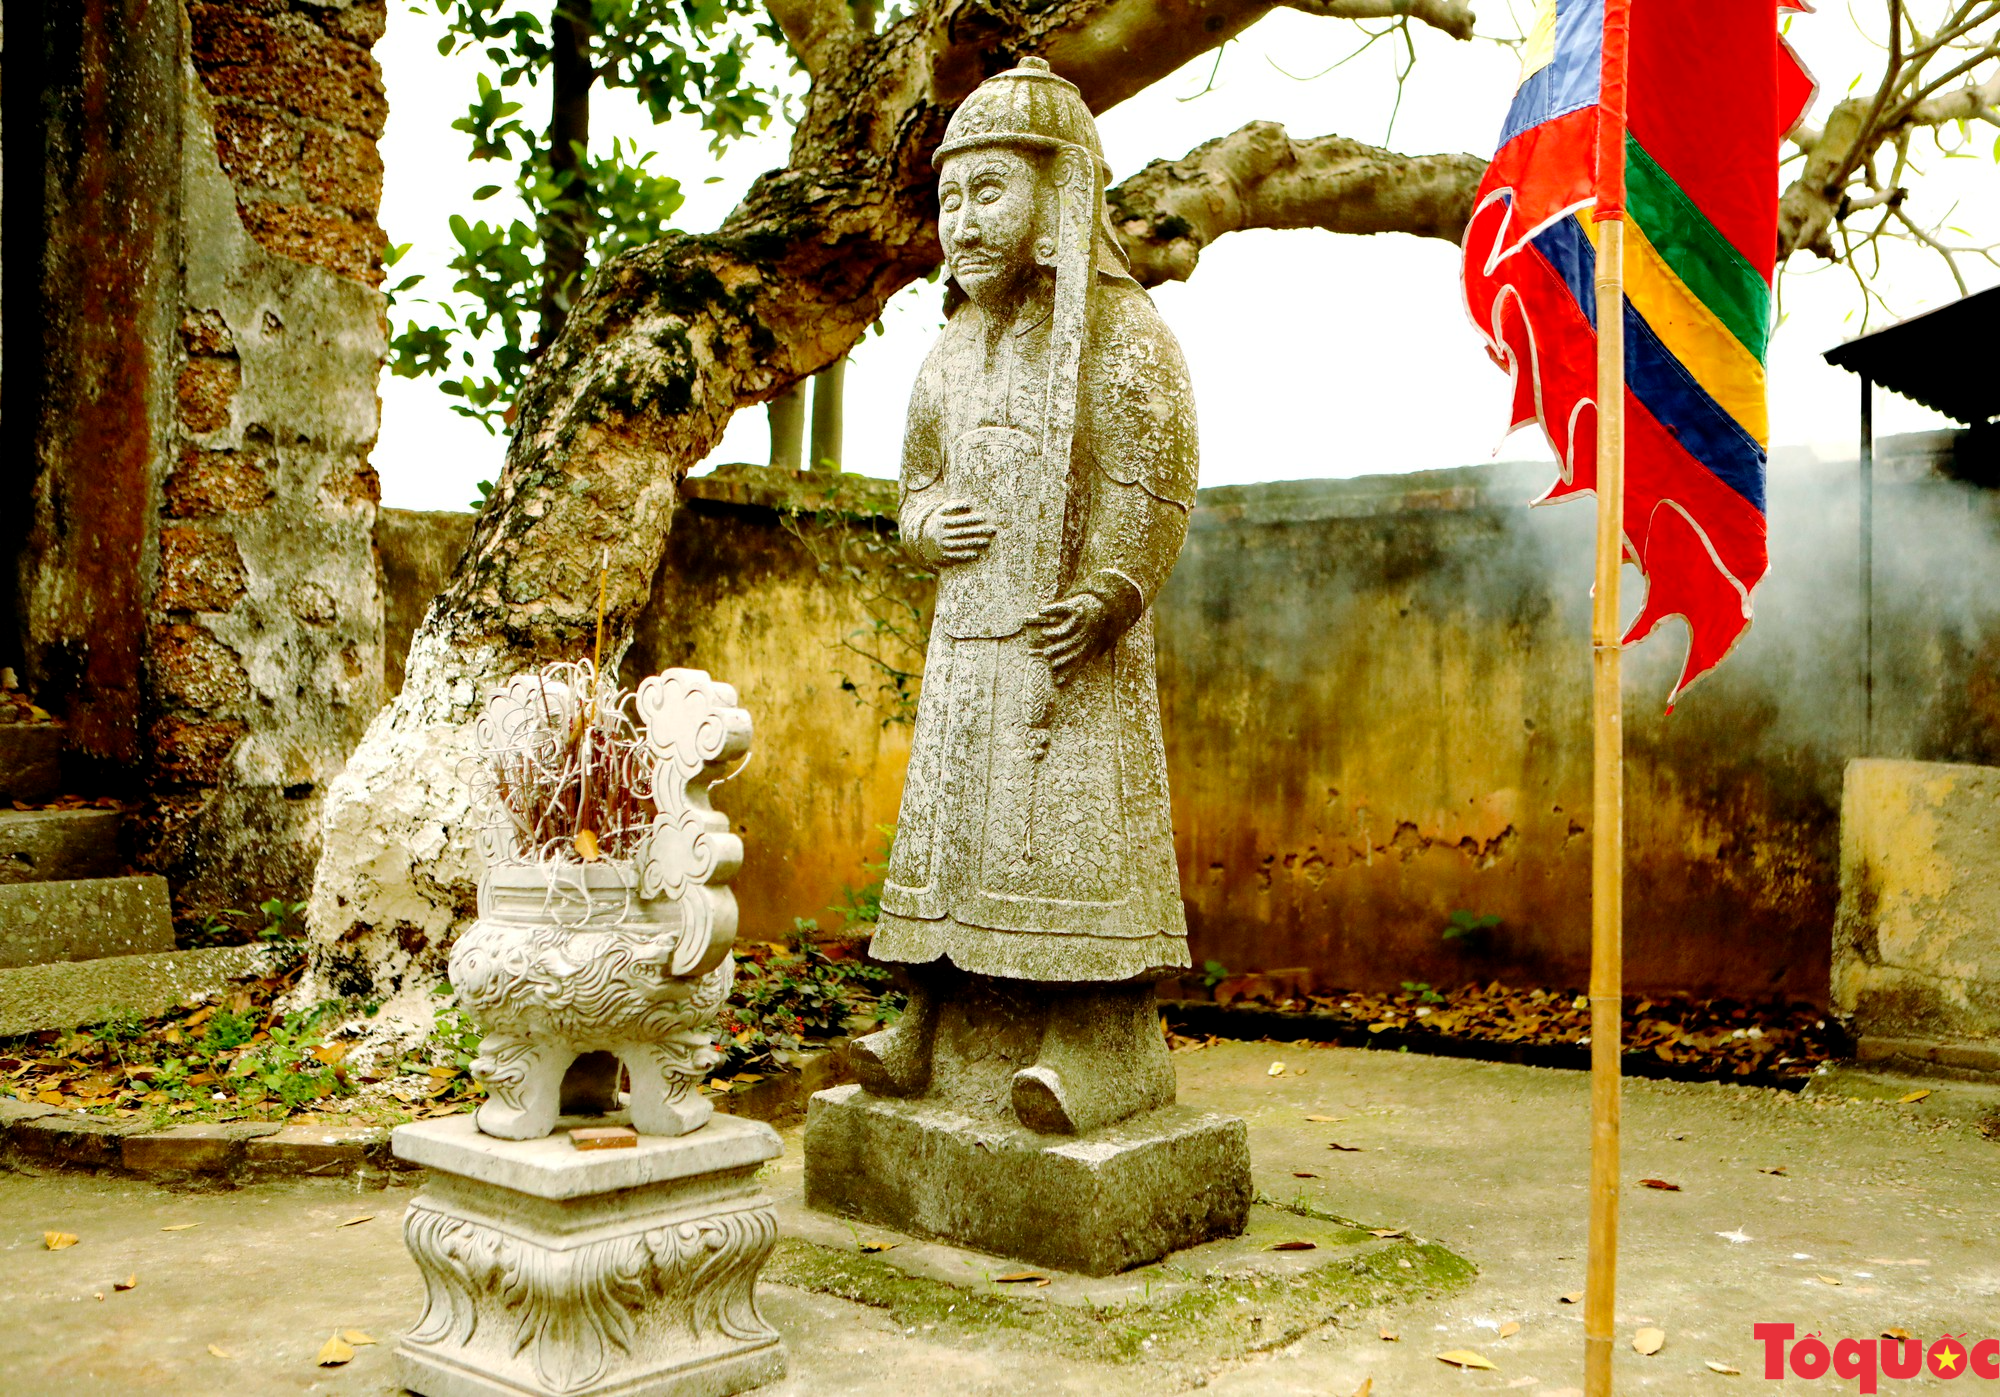 Đền đá Phú Đa kiến trúc độc đáo, đậm chất văn hóa Việt cổ - Ảnh 18.